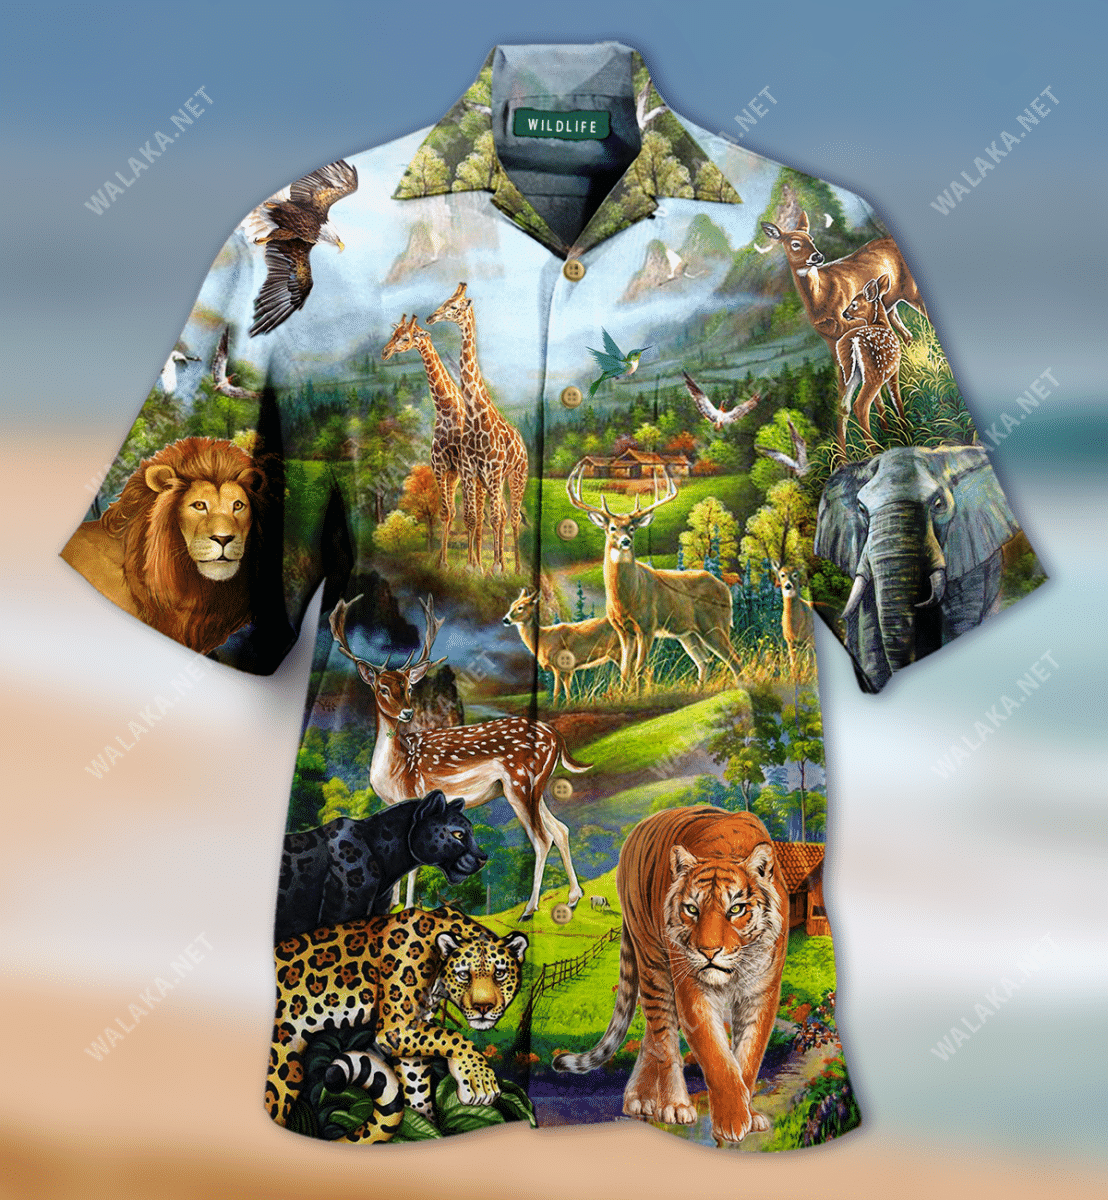 World Wildlife Colorful Good Hawaiian Shirt   19051816